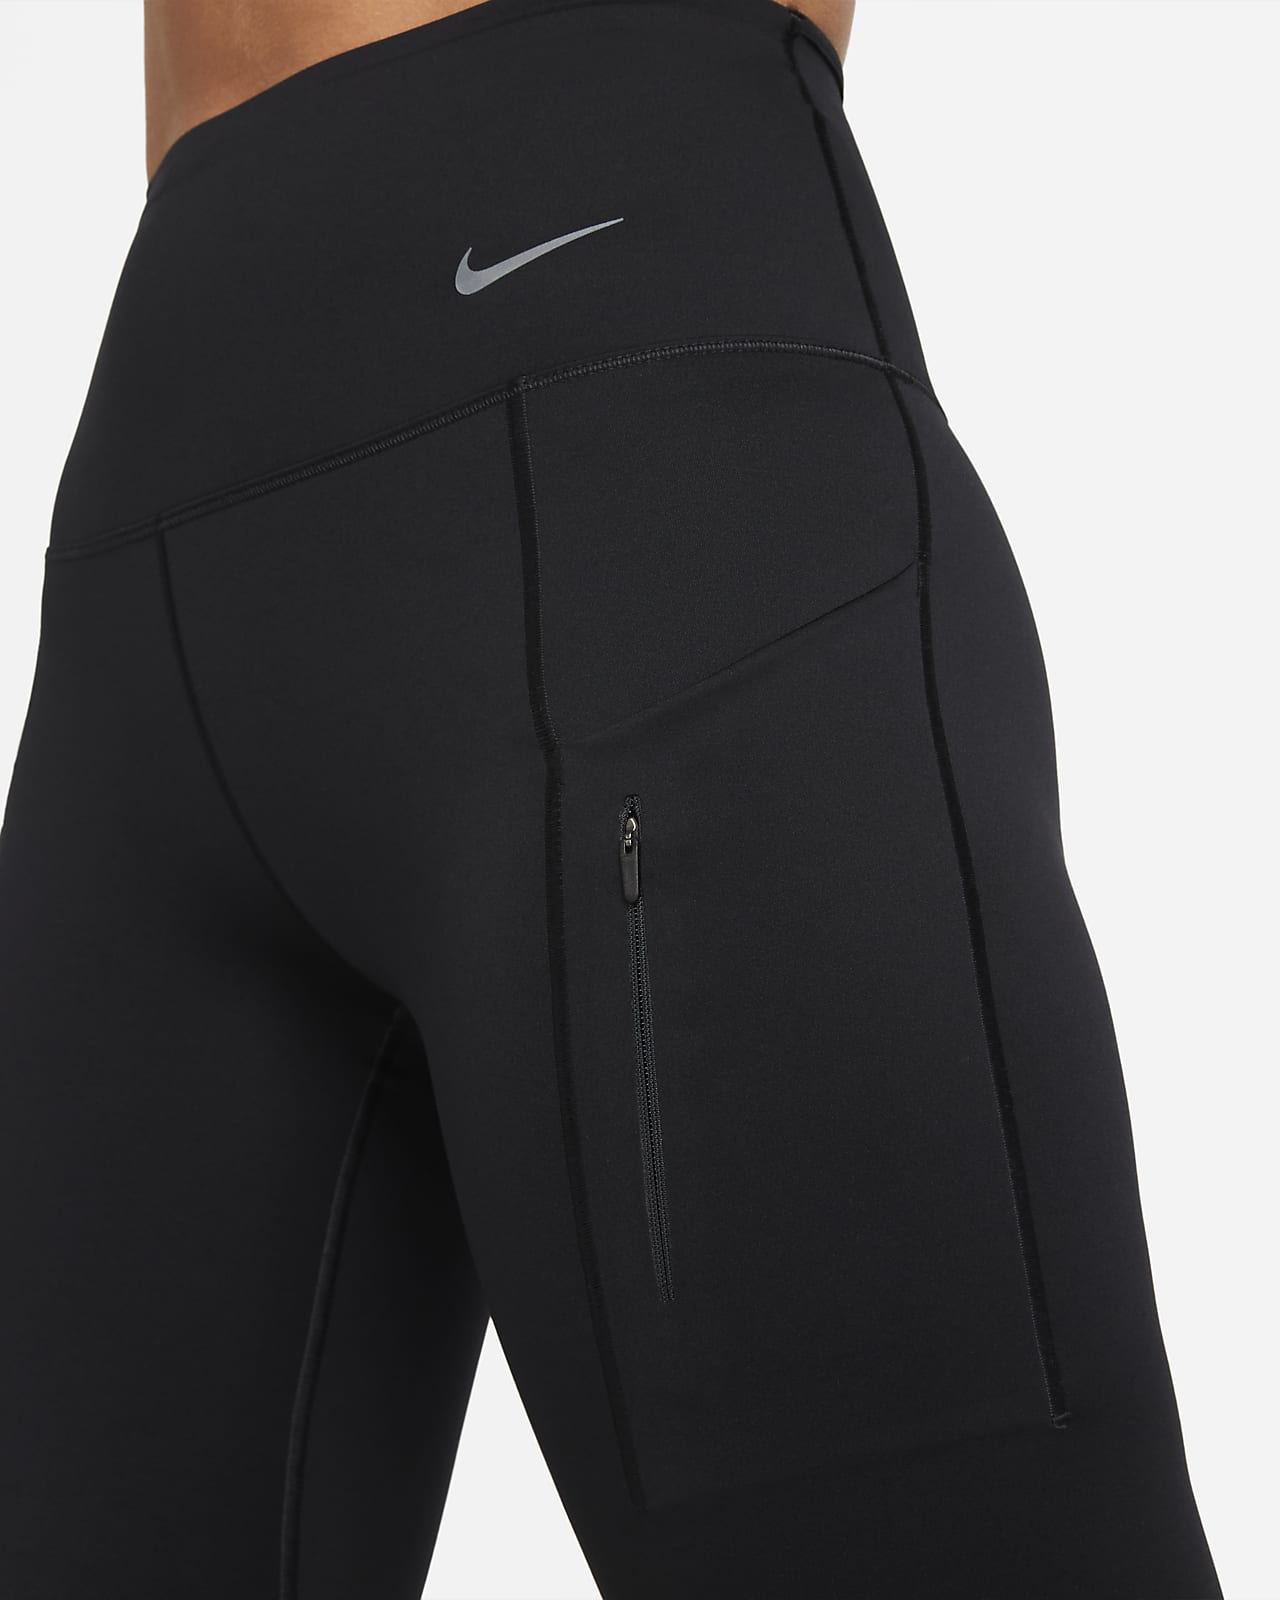 Leggings capri de cintura y sujeción firme con bolsillos para Nike Go. Nike.com